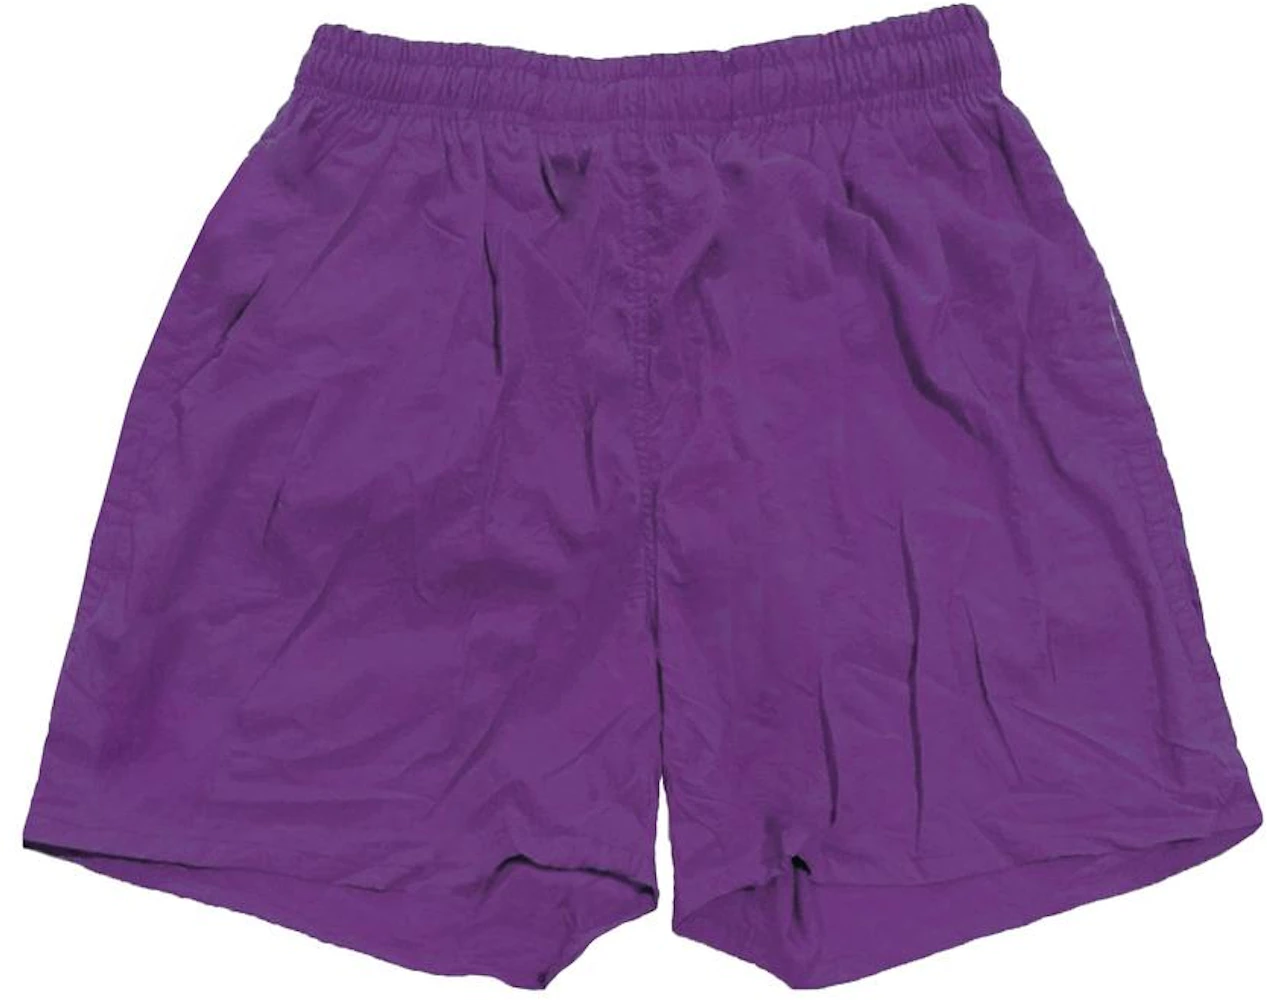 Travis Scott Climb Shorts Purple Men's - SS20 - US